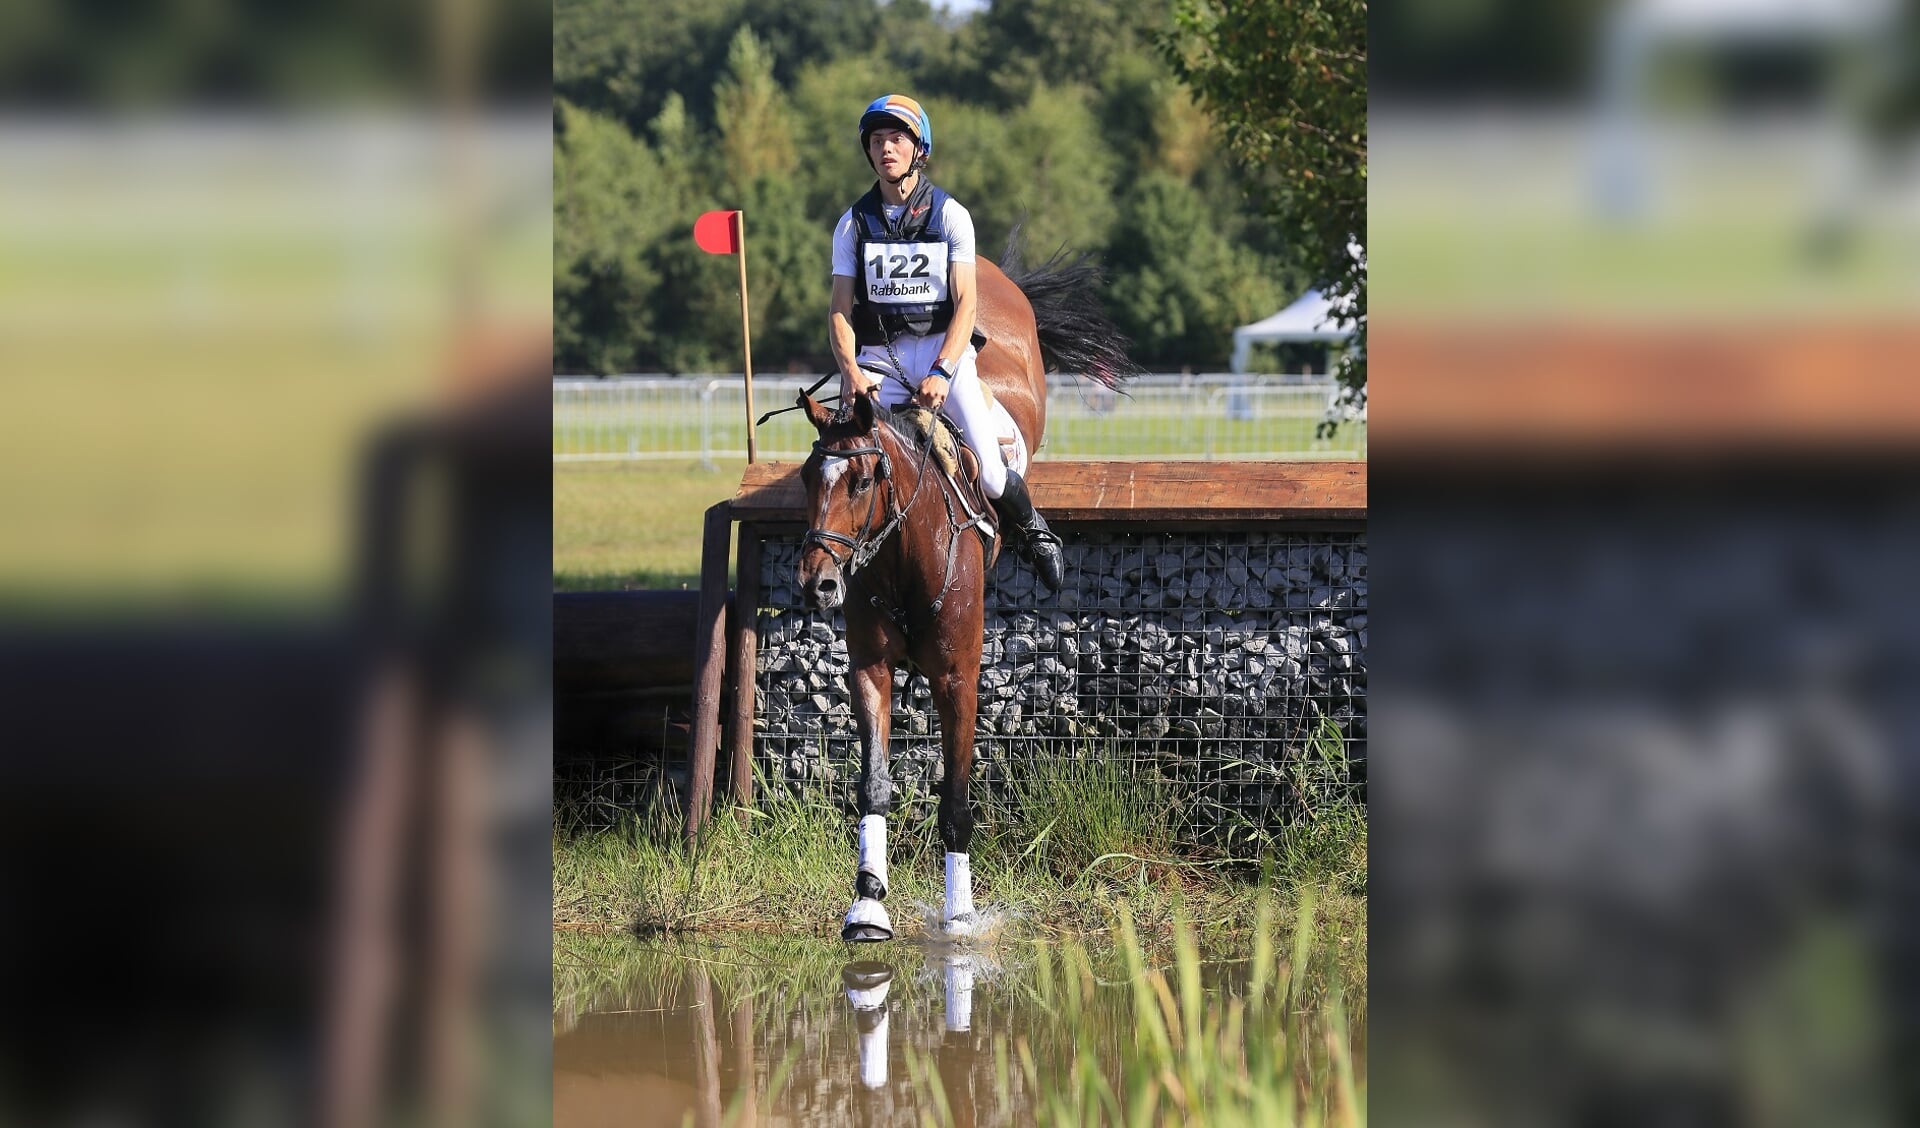 Machtig Willen Kliniek Goedkoop geslaagd: Zamira | Het onafhankelijke paarden(sport)medium